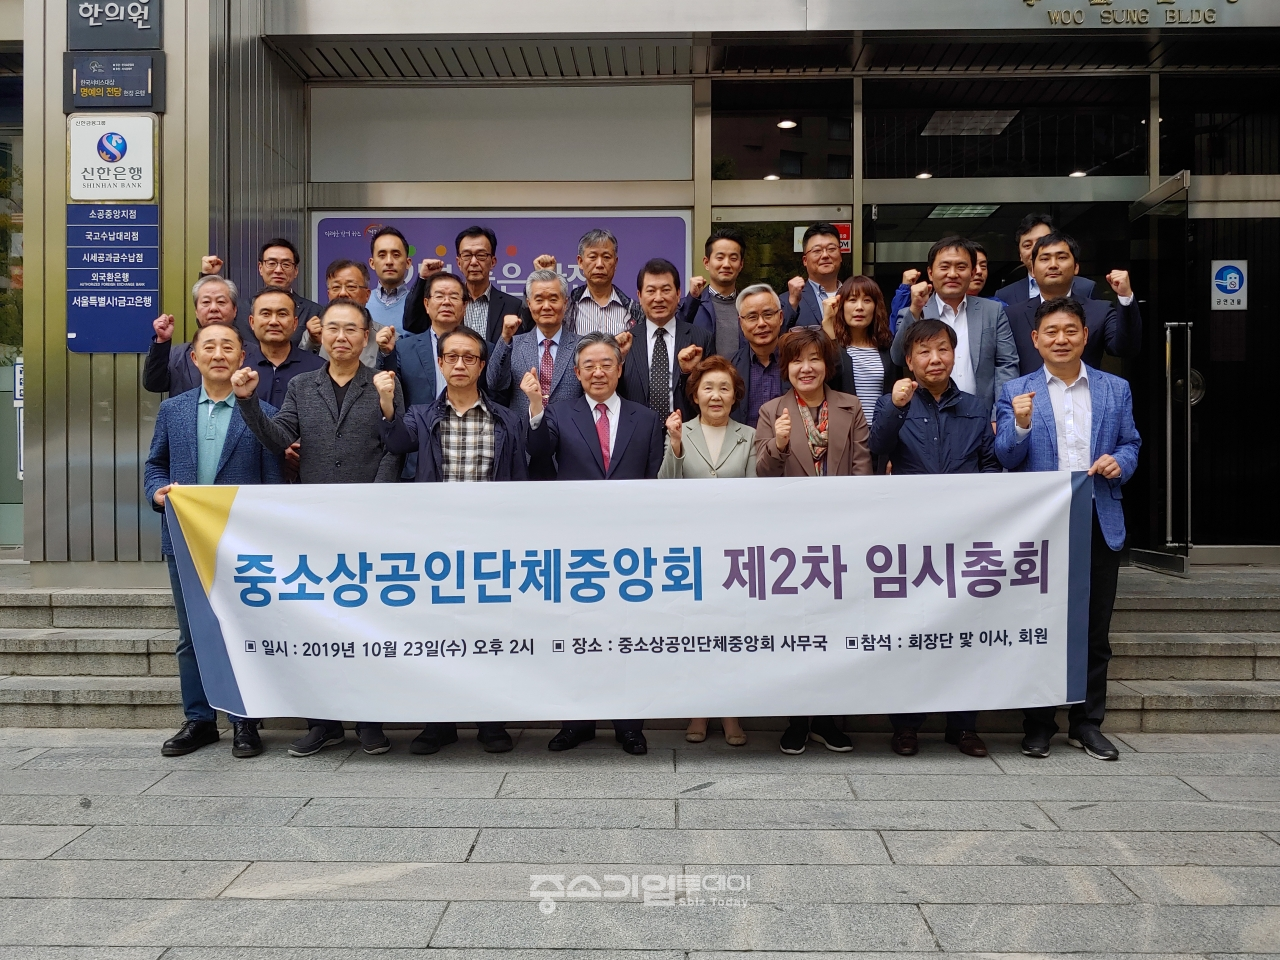 중소상공인단체중앙회는 지난달 23일 서울 중구에 위치한 사무국에서 ‘제2차 임시총회’를 개최했다. 정잉대 중앙회장(첫줄 왼쪽에서 네번째)을 비롯한 참석자들이 기념촬영을 하고 있다.